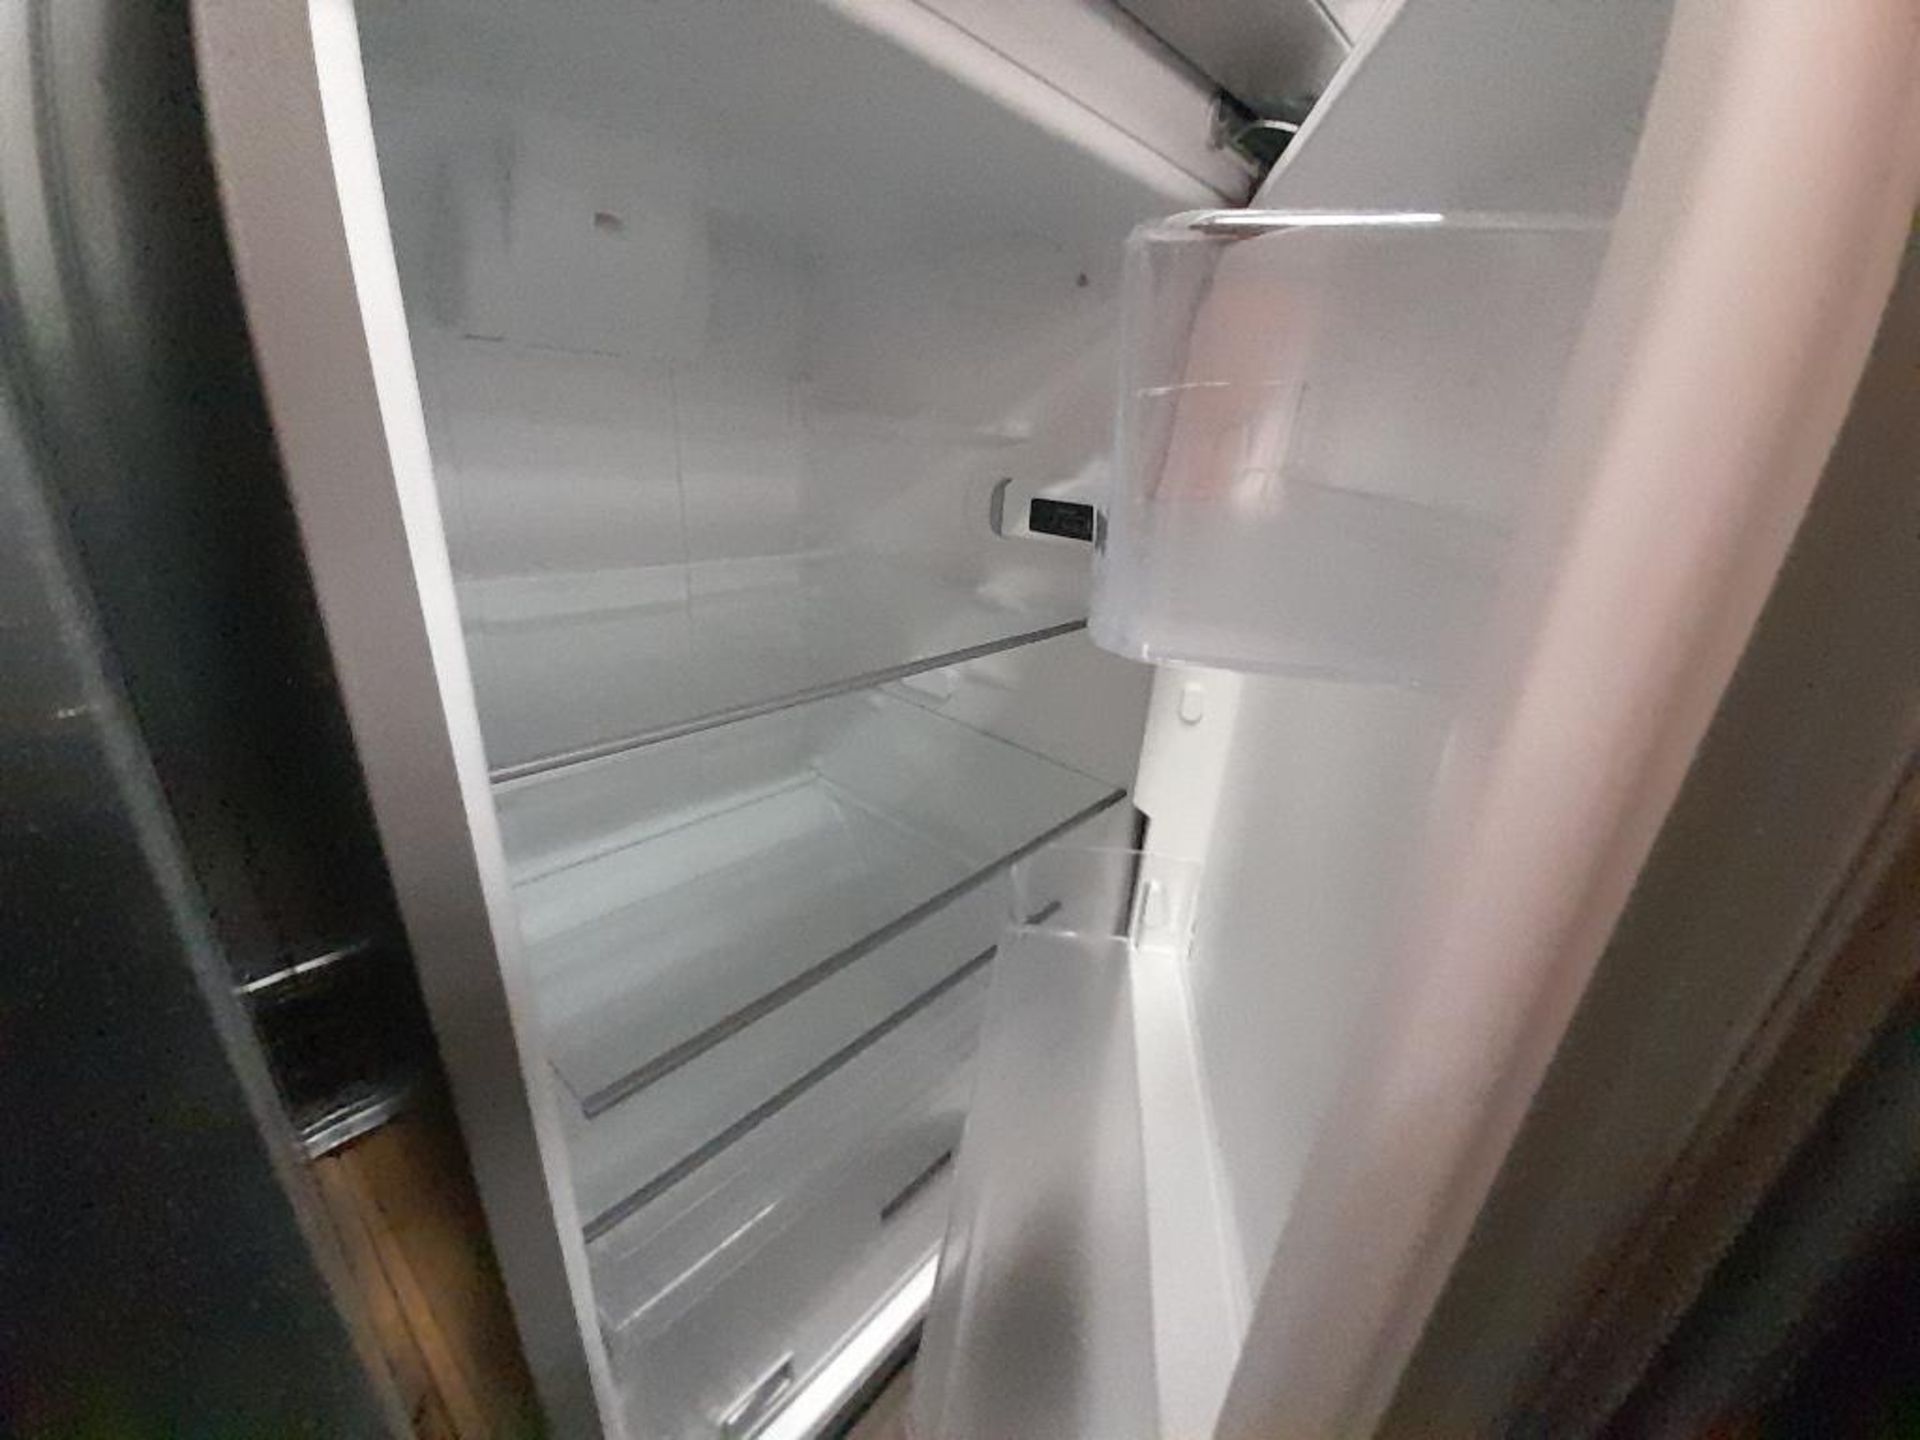 Lote de 2 refrigeradores contiene: 1 Refrigerador Con Dispensador De Agua MABE, Modelo FJMRDA, Seri - Image 5 of 8